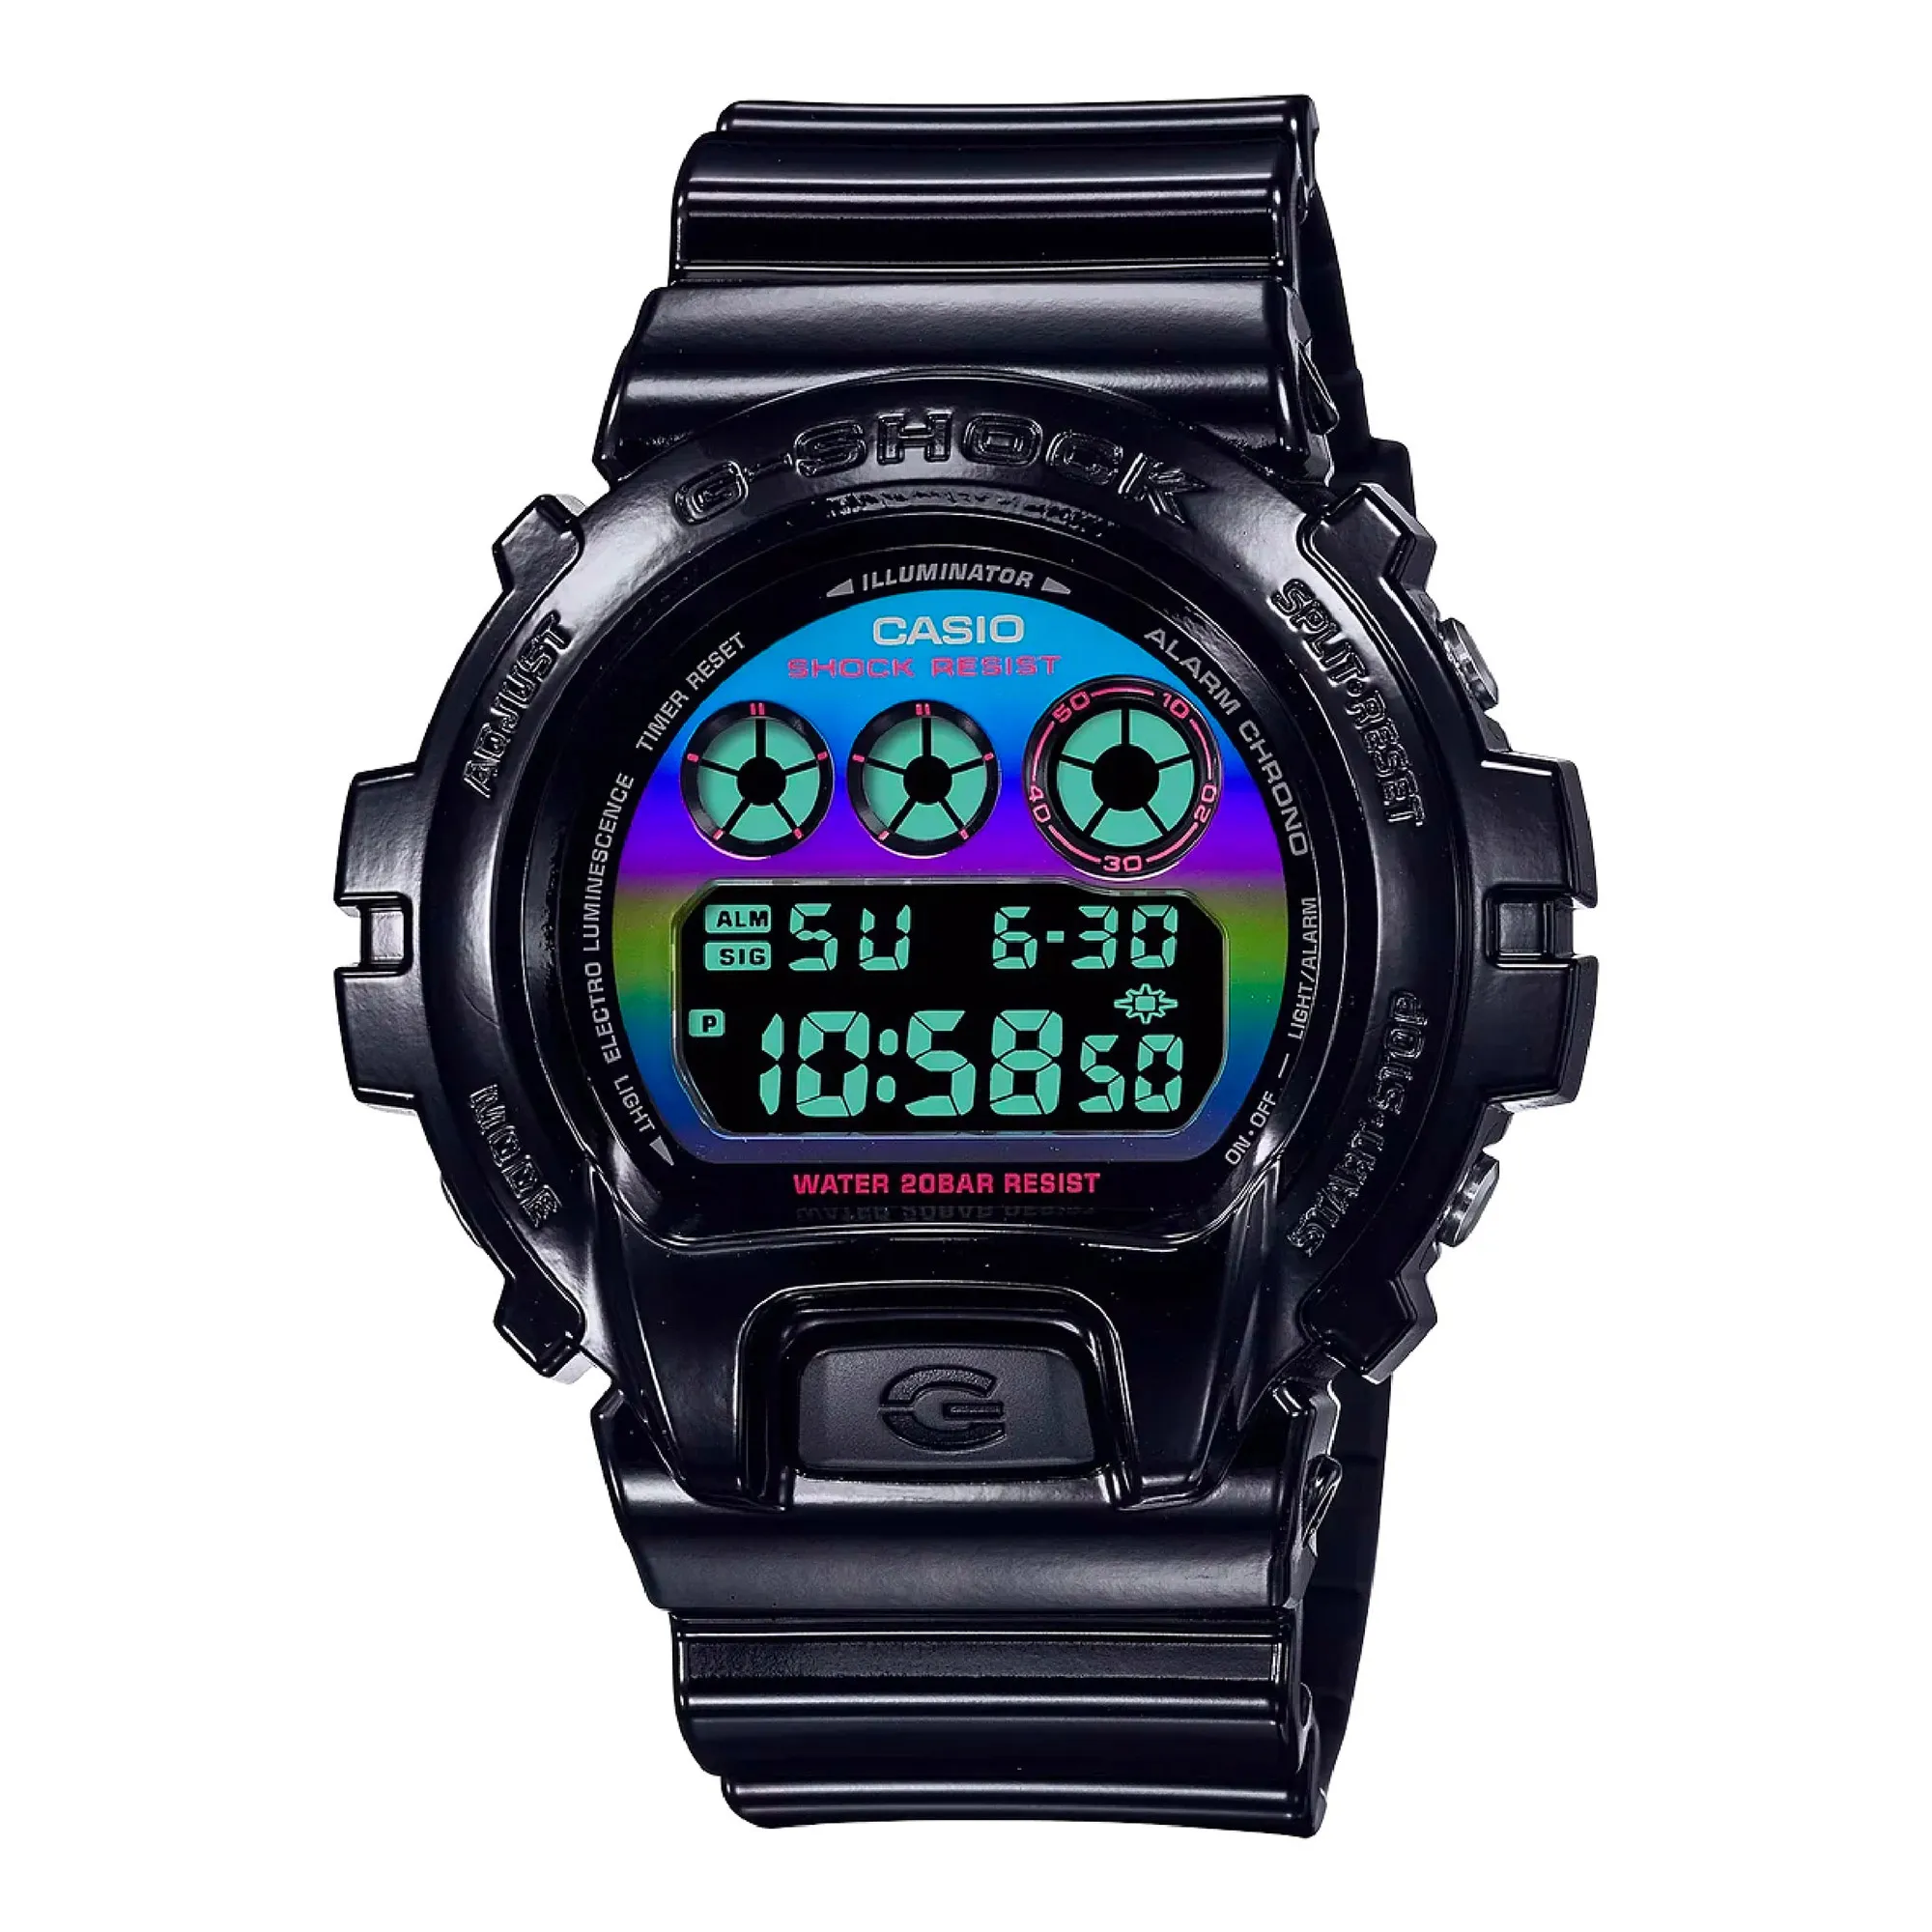 Watch CASIO G-Shock dw-6900rgb-1er